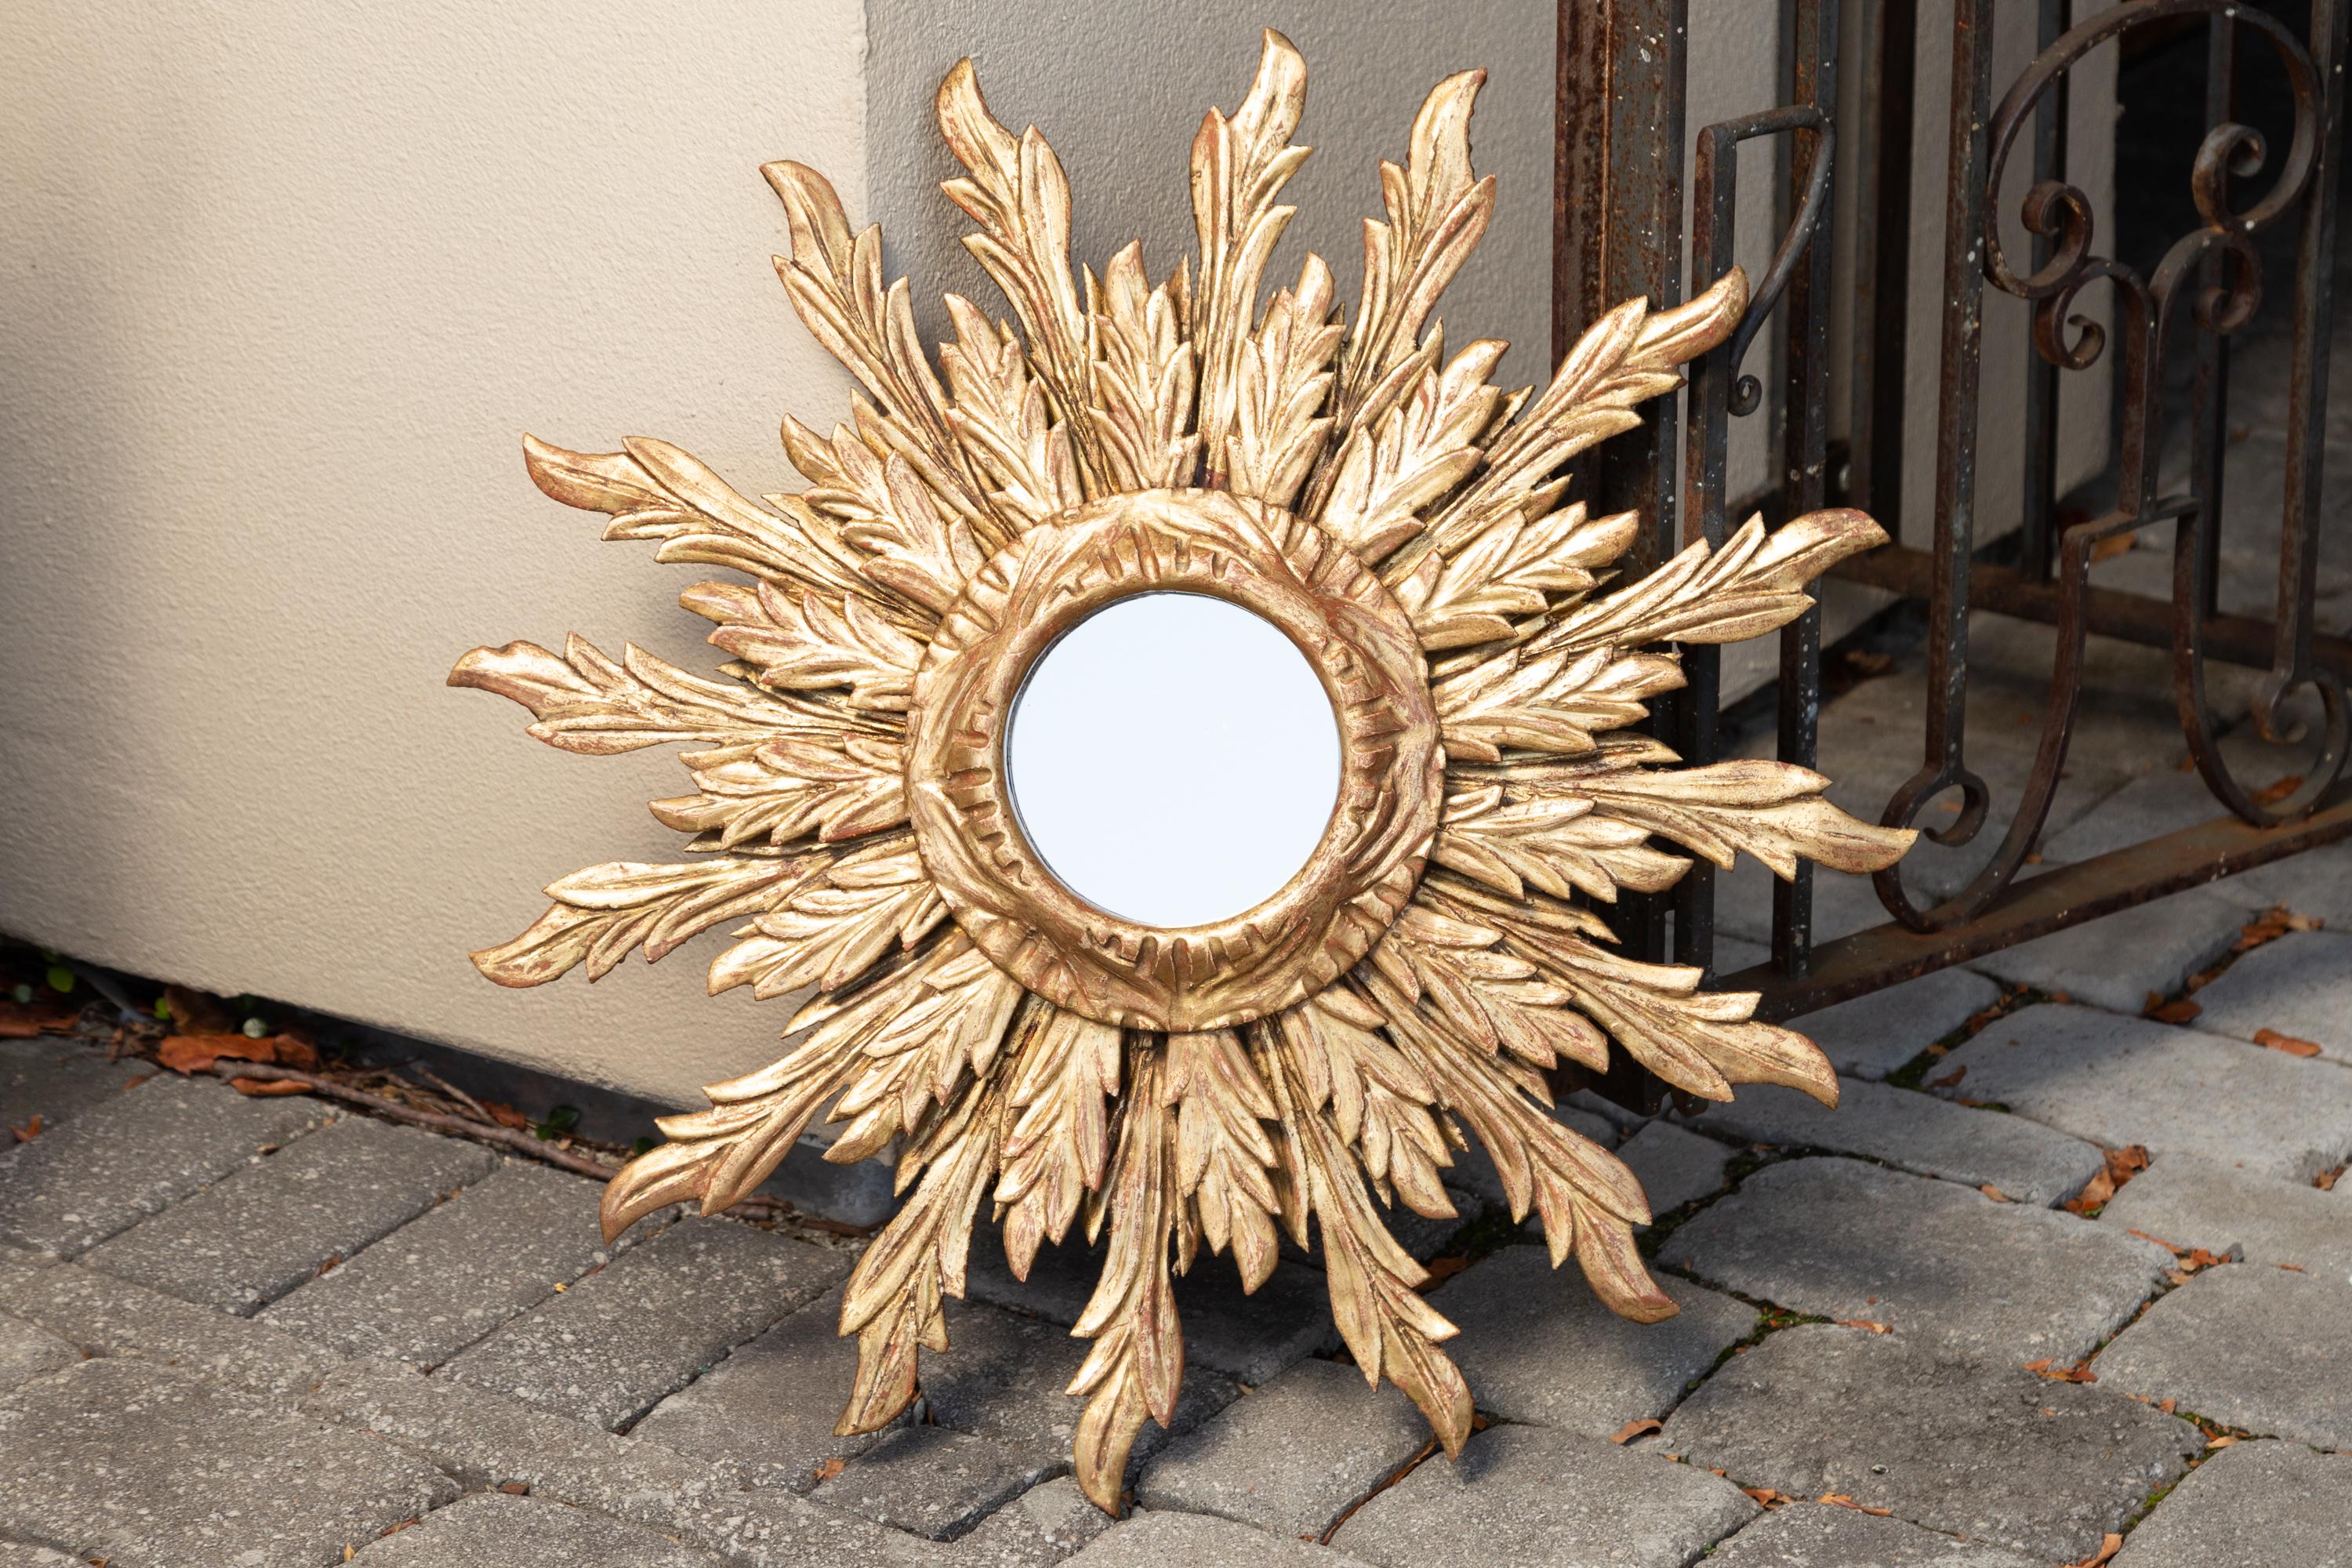 Miroir en bois doré à double couche de rayons de soleil, datant du milieu du 20e siècle, avec des rayons de soleil ondulés. Née en France au milieu du siècle dernier, cette pièce vintage exquise présente une plaque de miroir ronde de petite taille